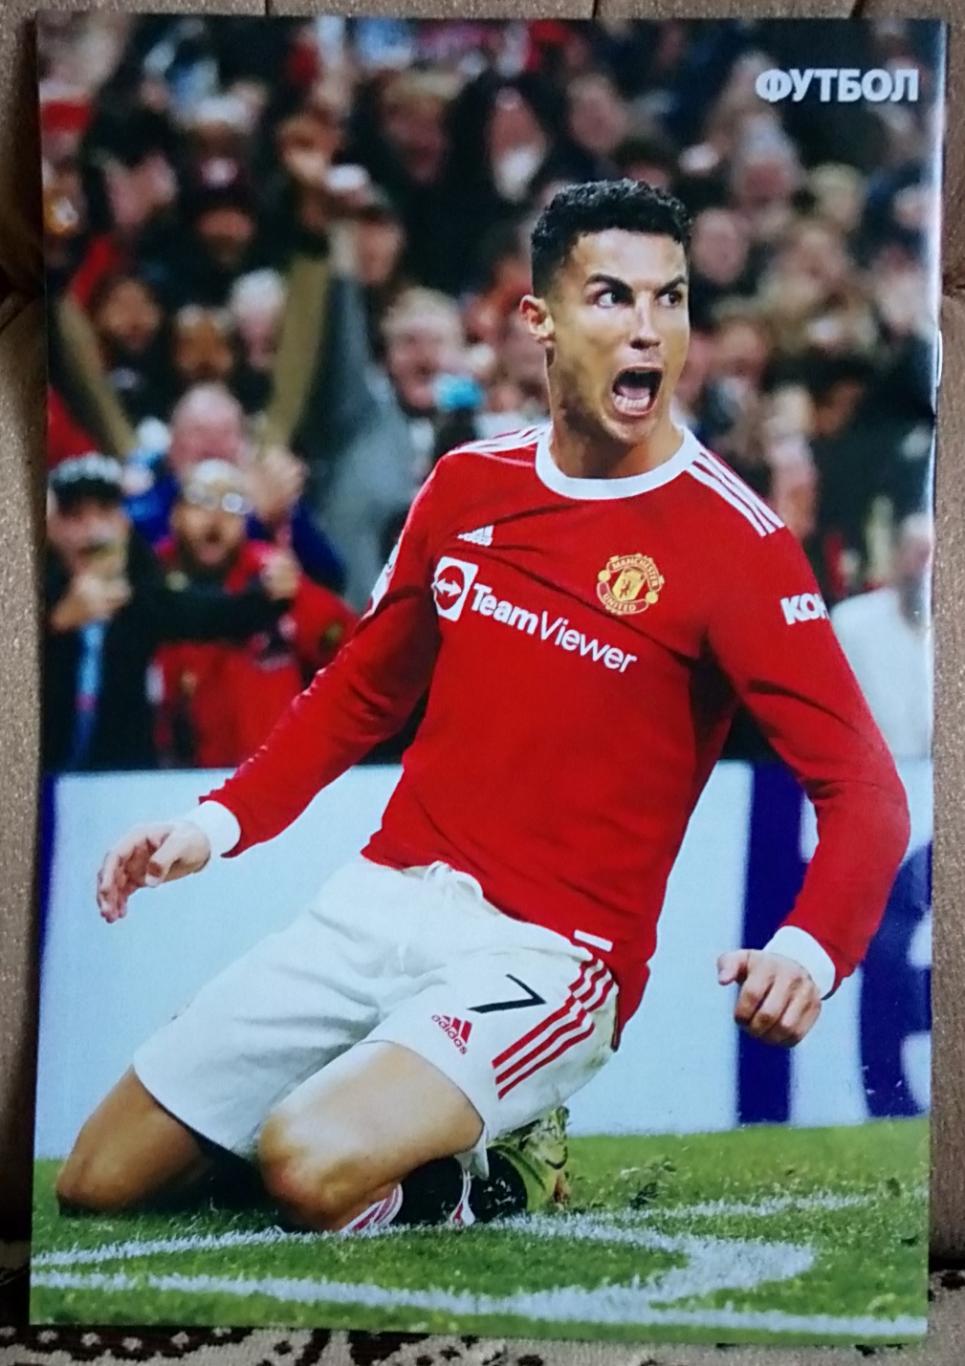 Журнал. Футбол. N 80/2021.Постер Роналдо. 1